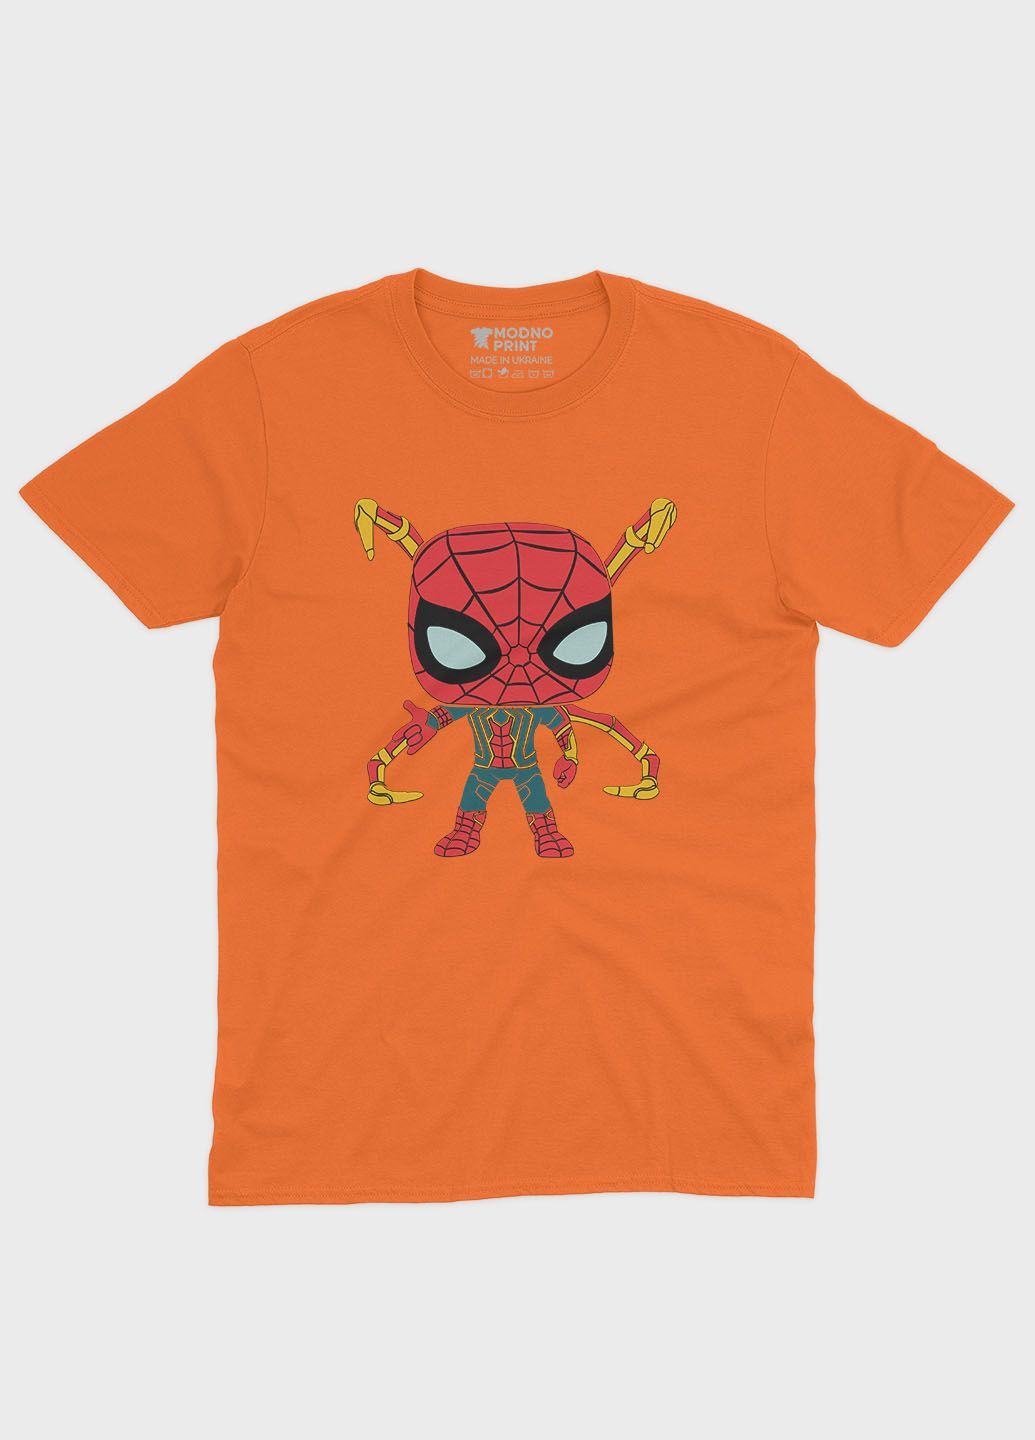 Оранжевая демисезонная футболка для мальчика с принтом супергероя - человек-паук (ts001-1-ora-006-014-015-b) Modno